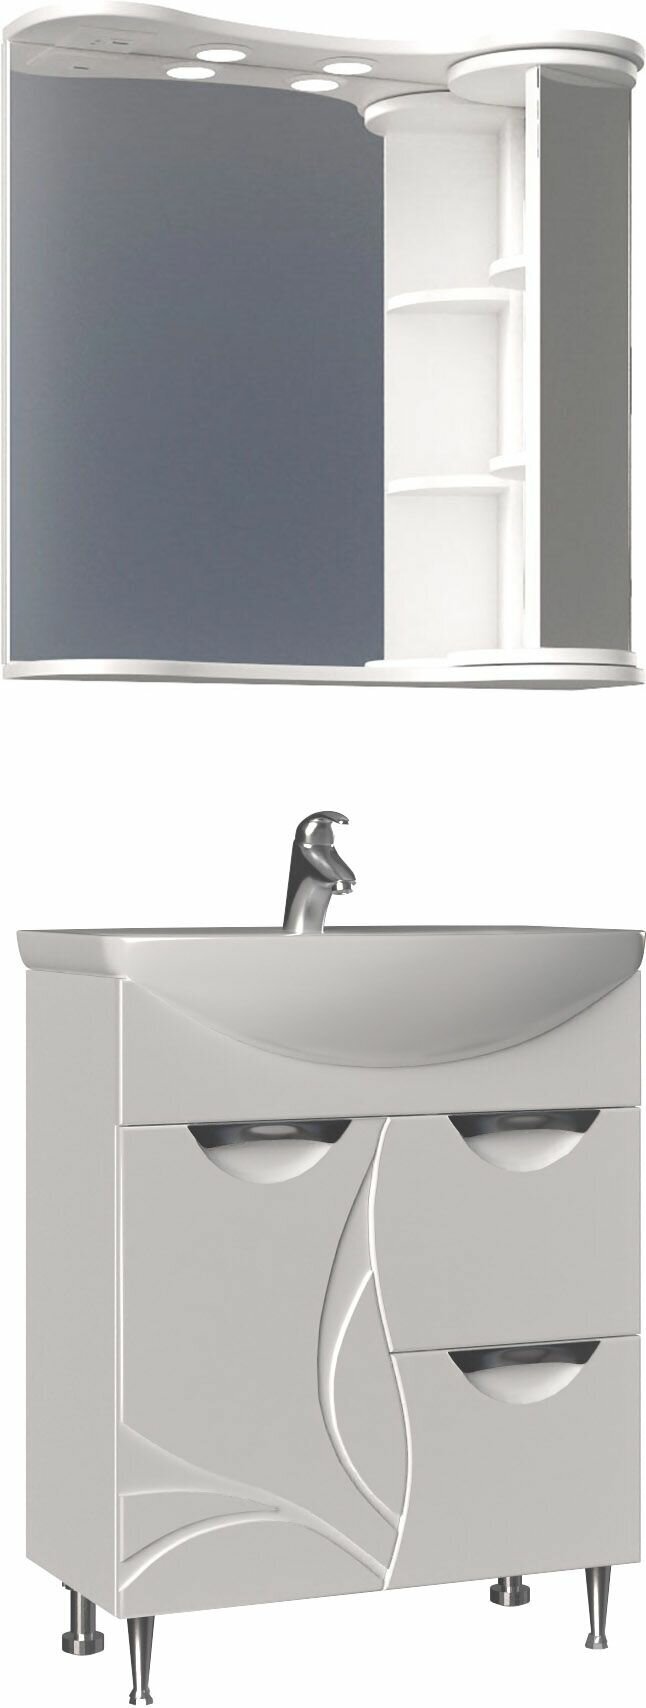 Мебель для ванной Vigo Callao 70 new